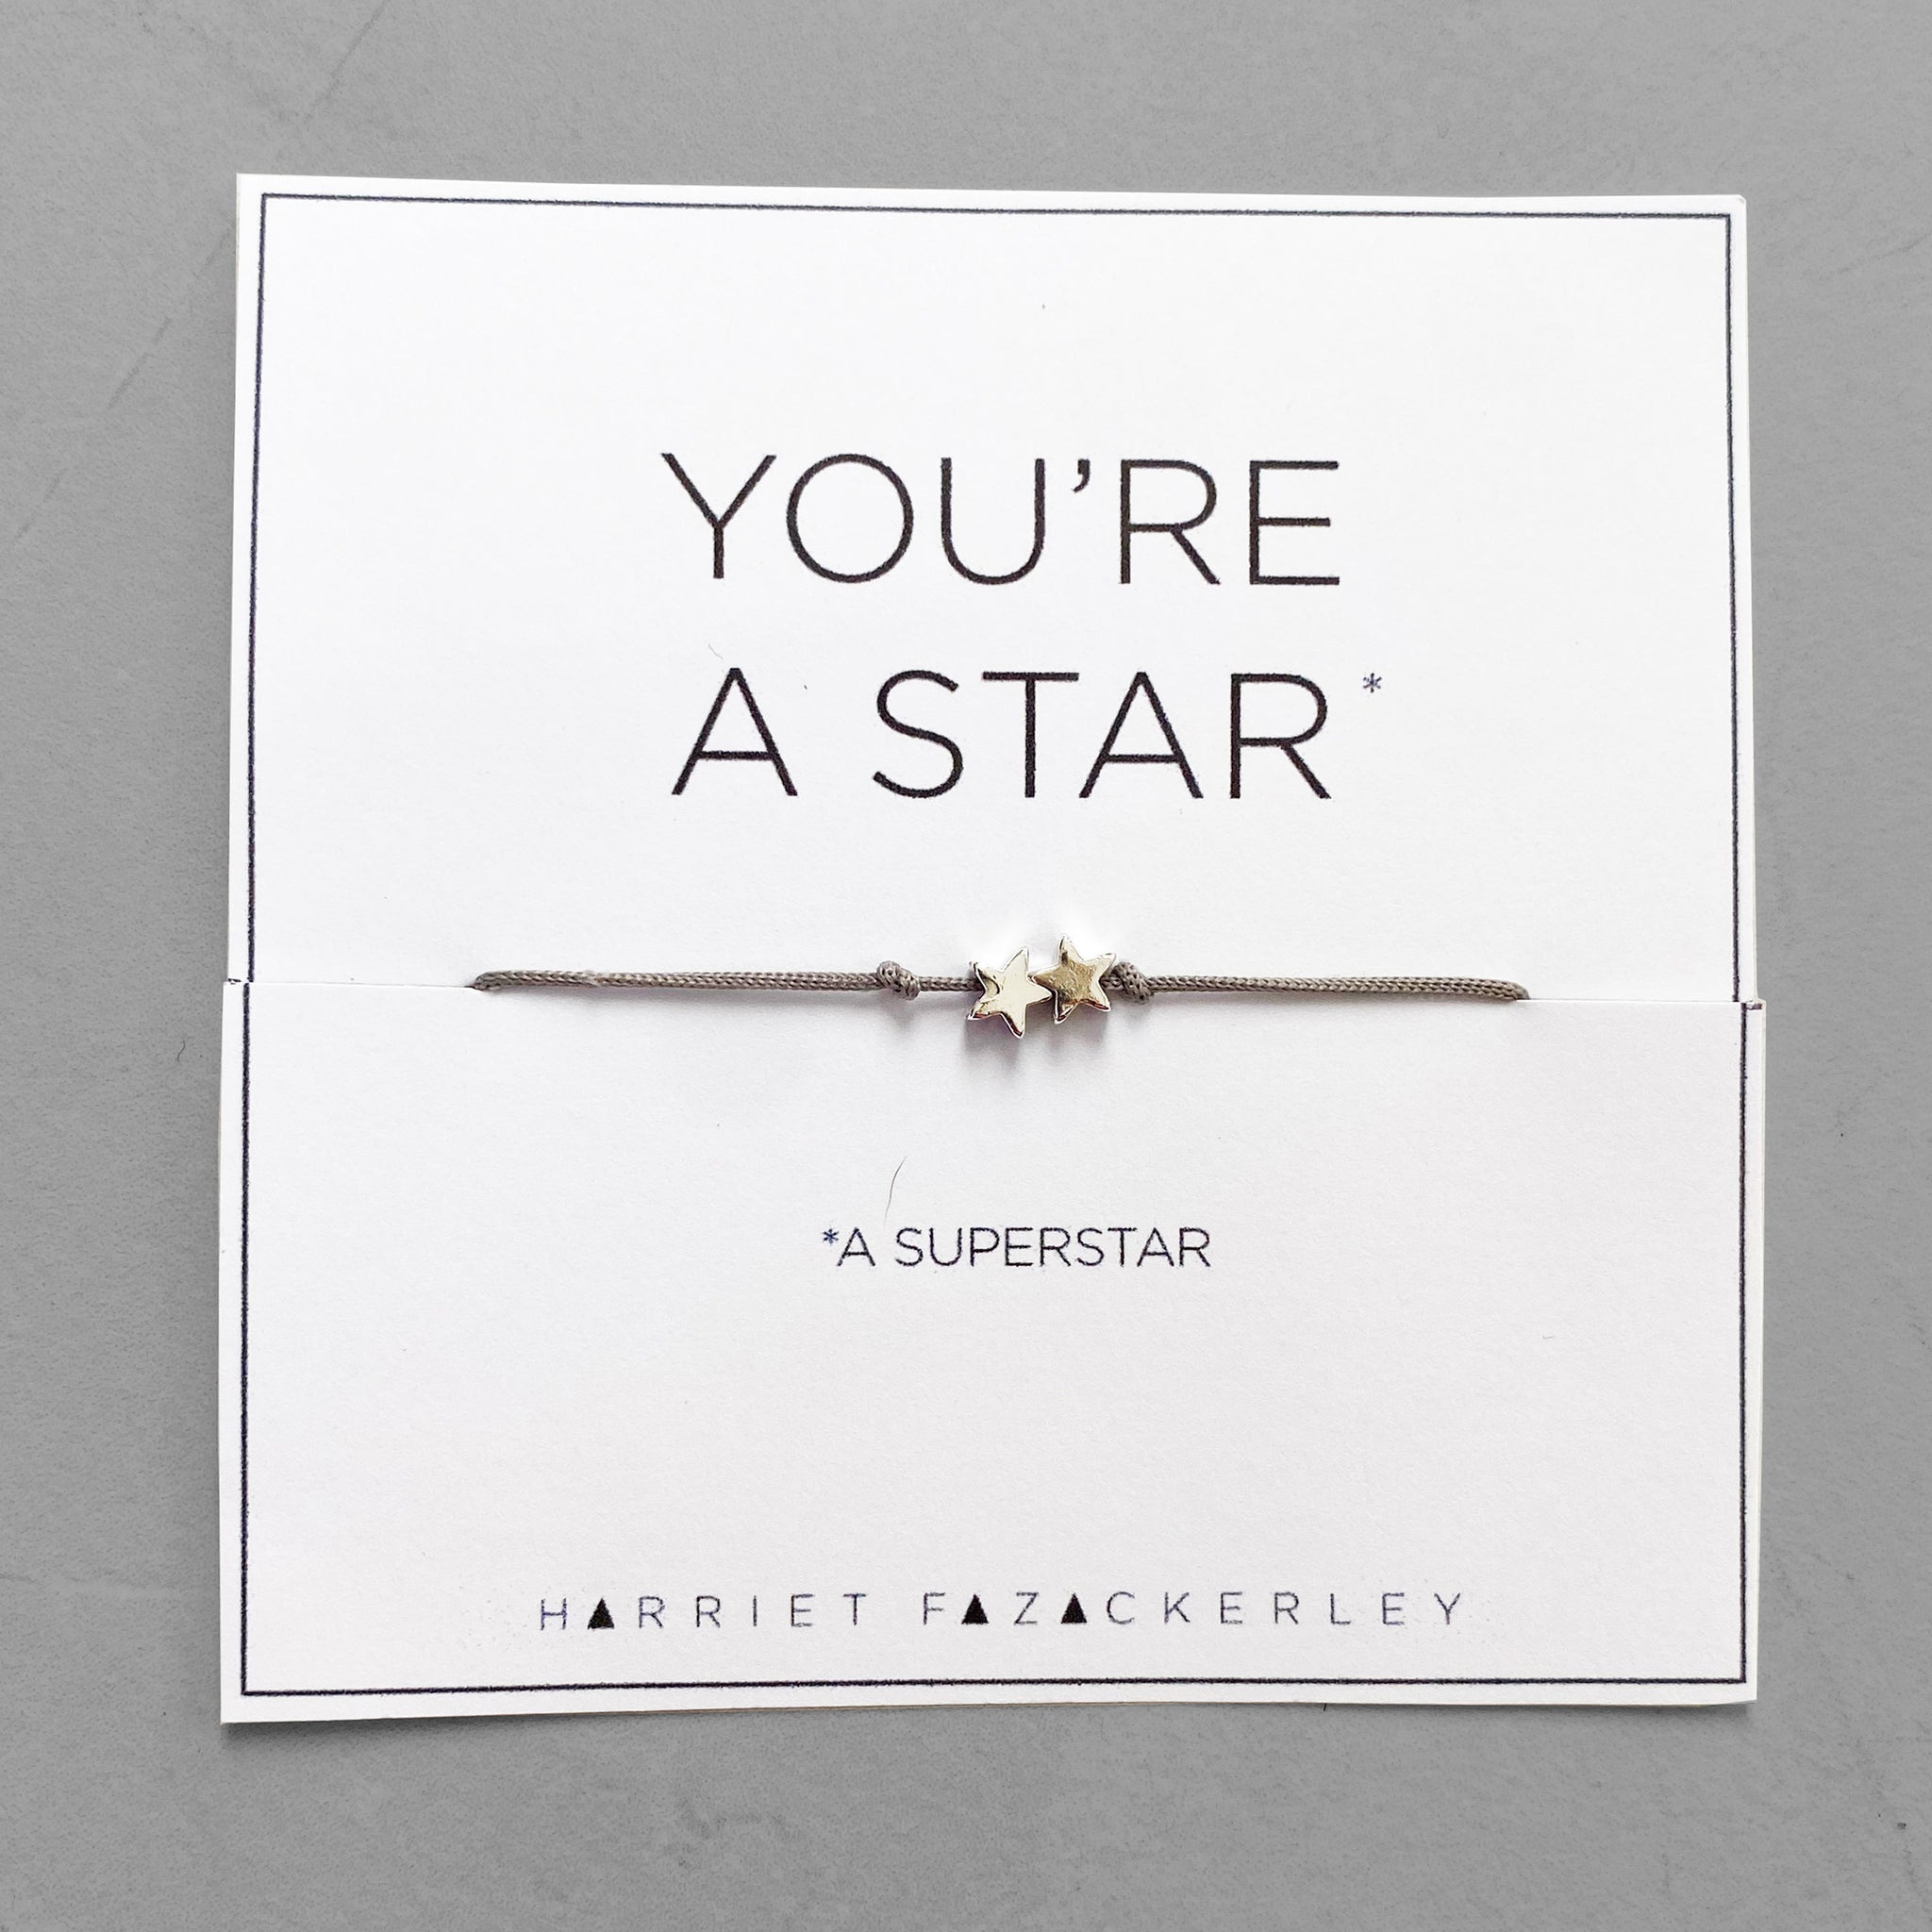 You're a star (a superstar)